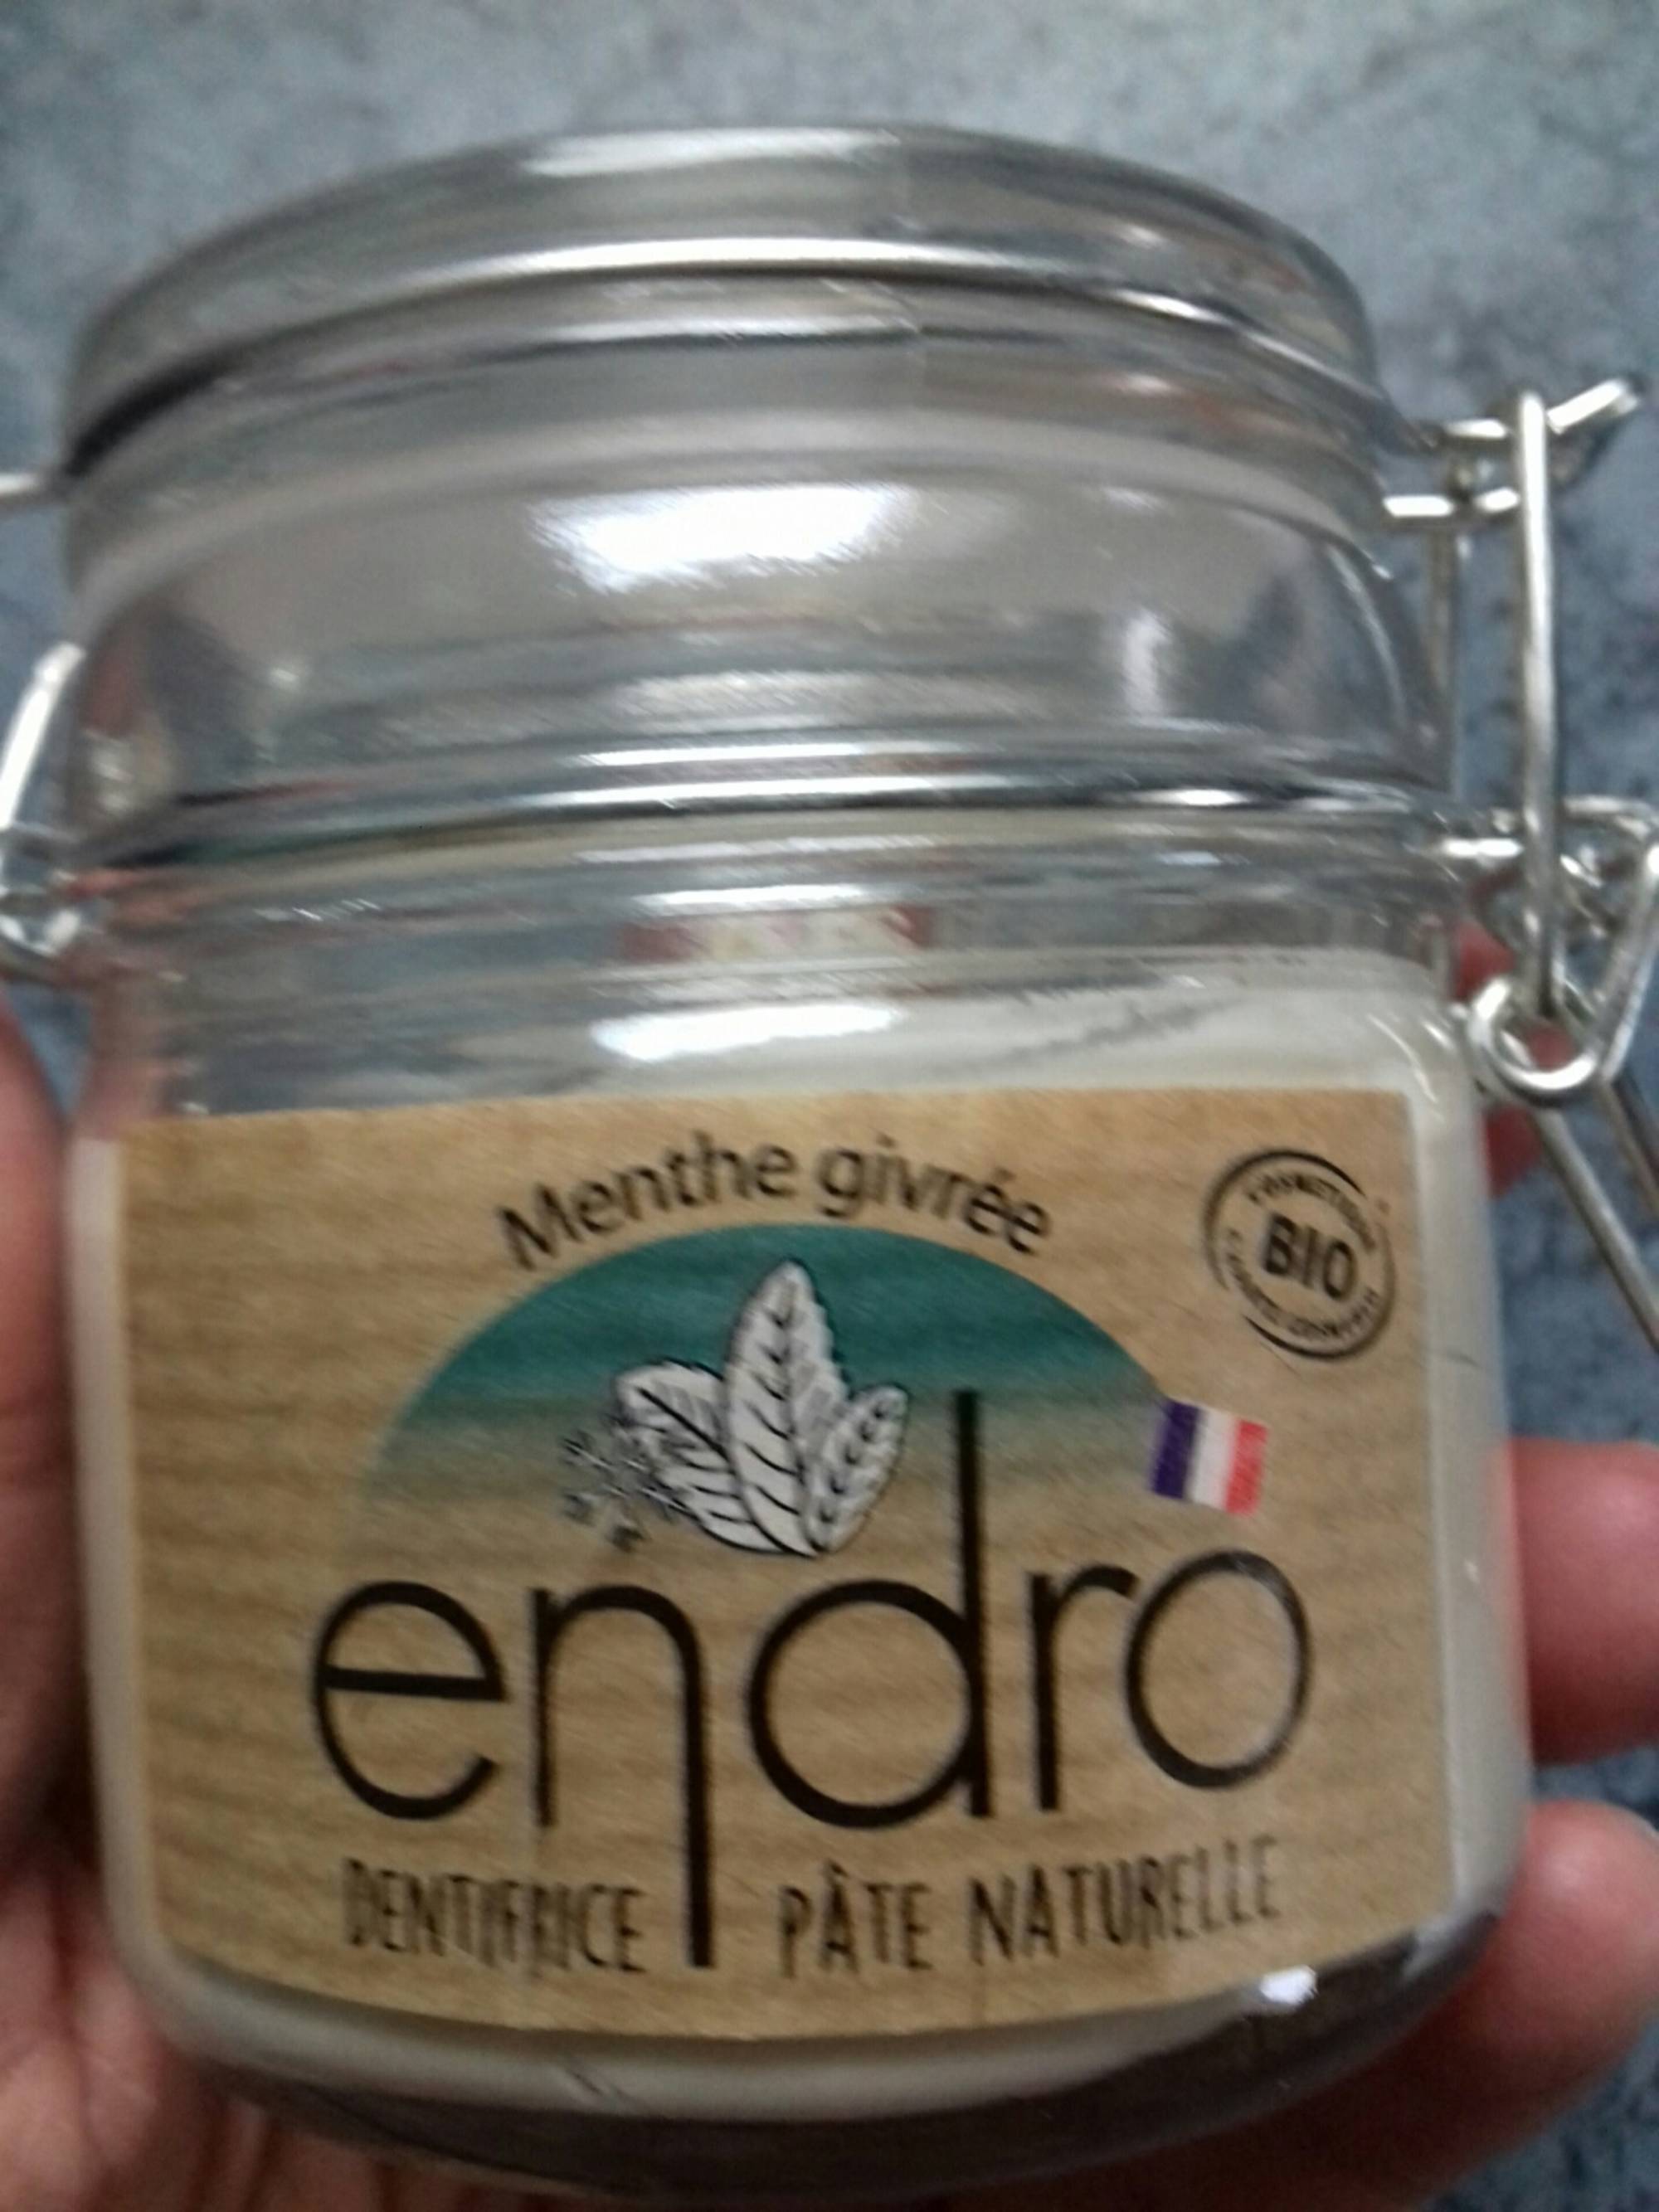 ENDRO - Dentifrice pâte naturelle menthe givrée